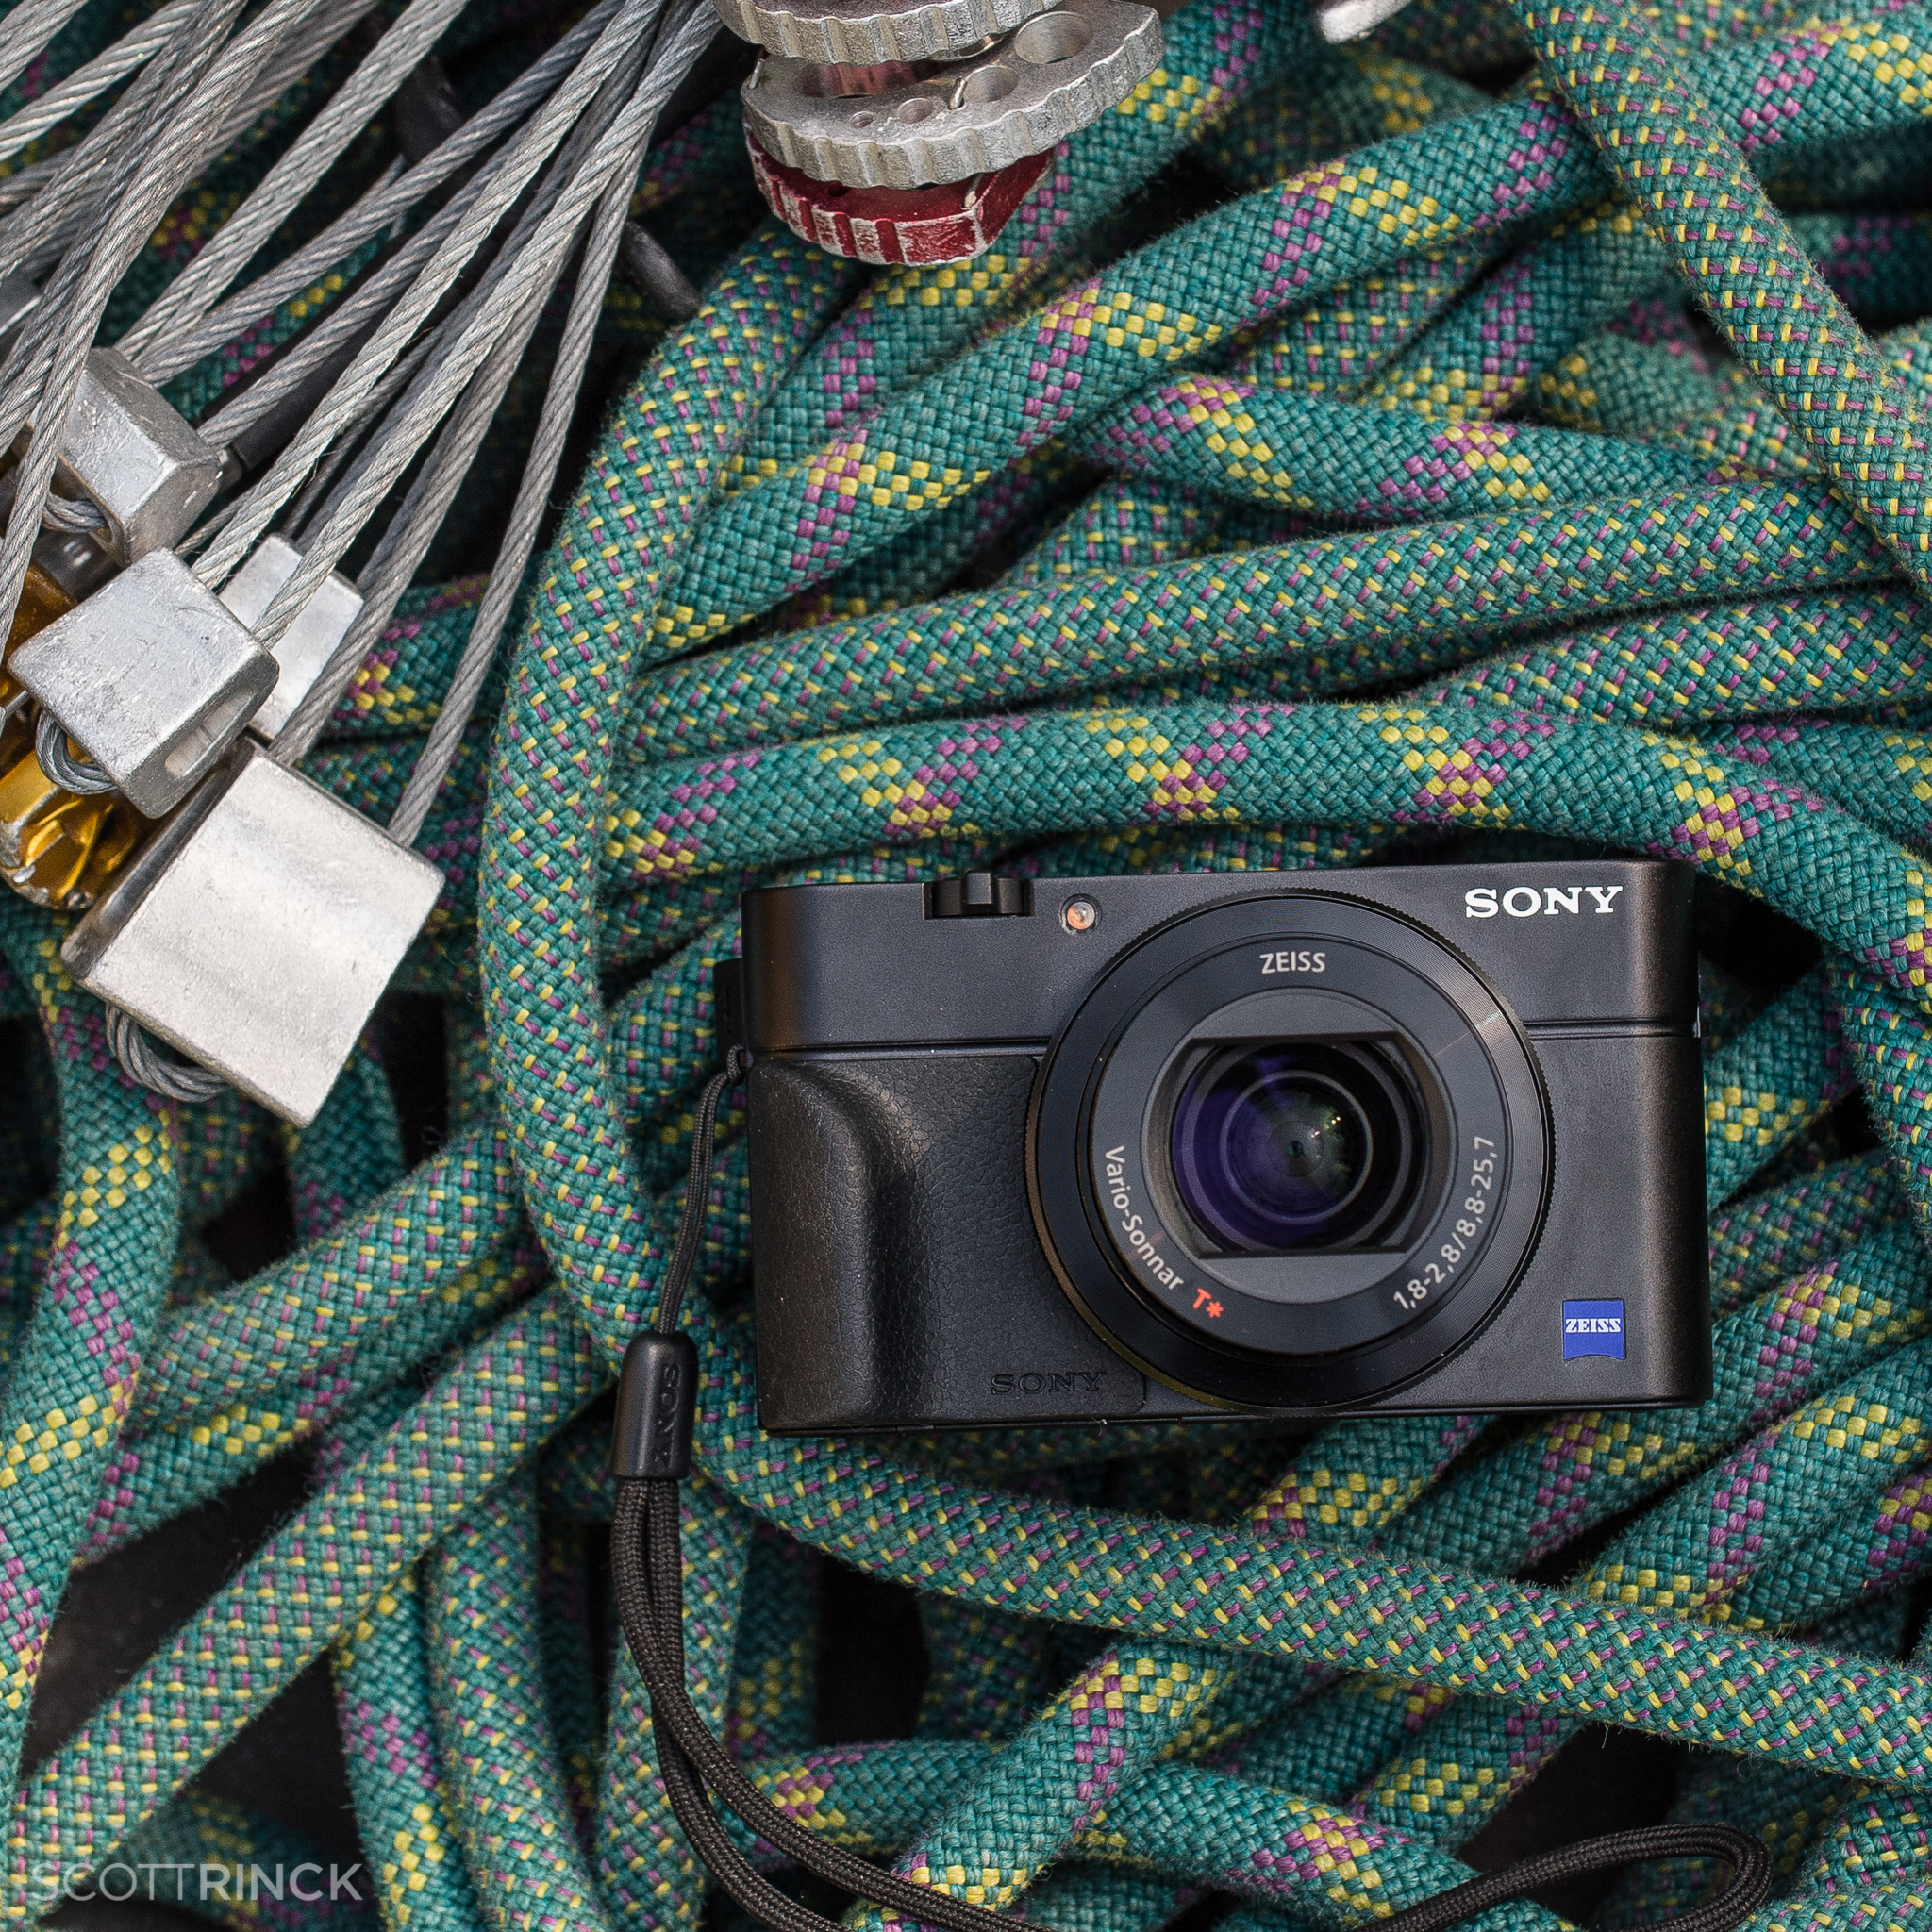 verlangen met de klok mee Wrijven Is the Sony RX100 III the Best 'Pocket' Camera Ever? — Scott Rinckenberger  Photography